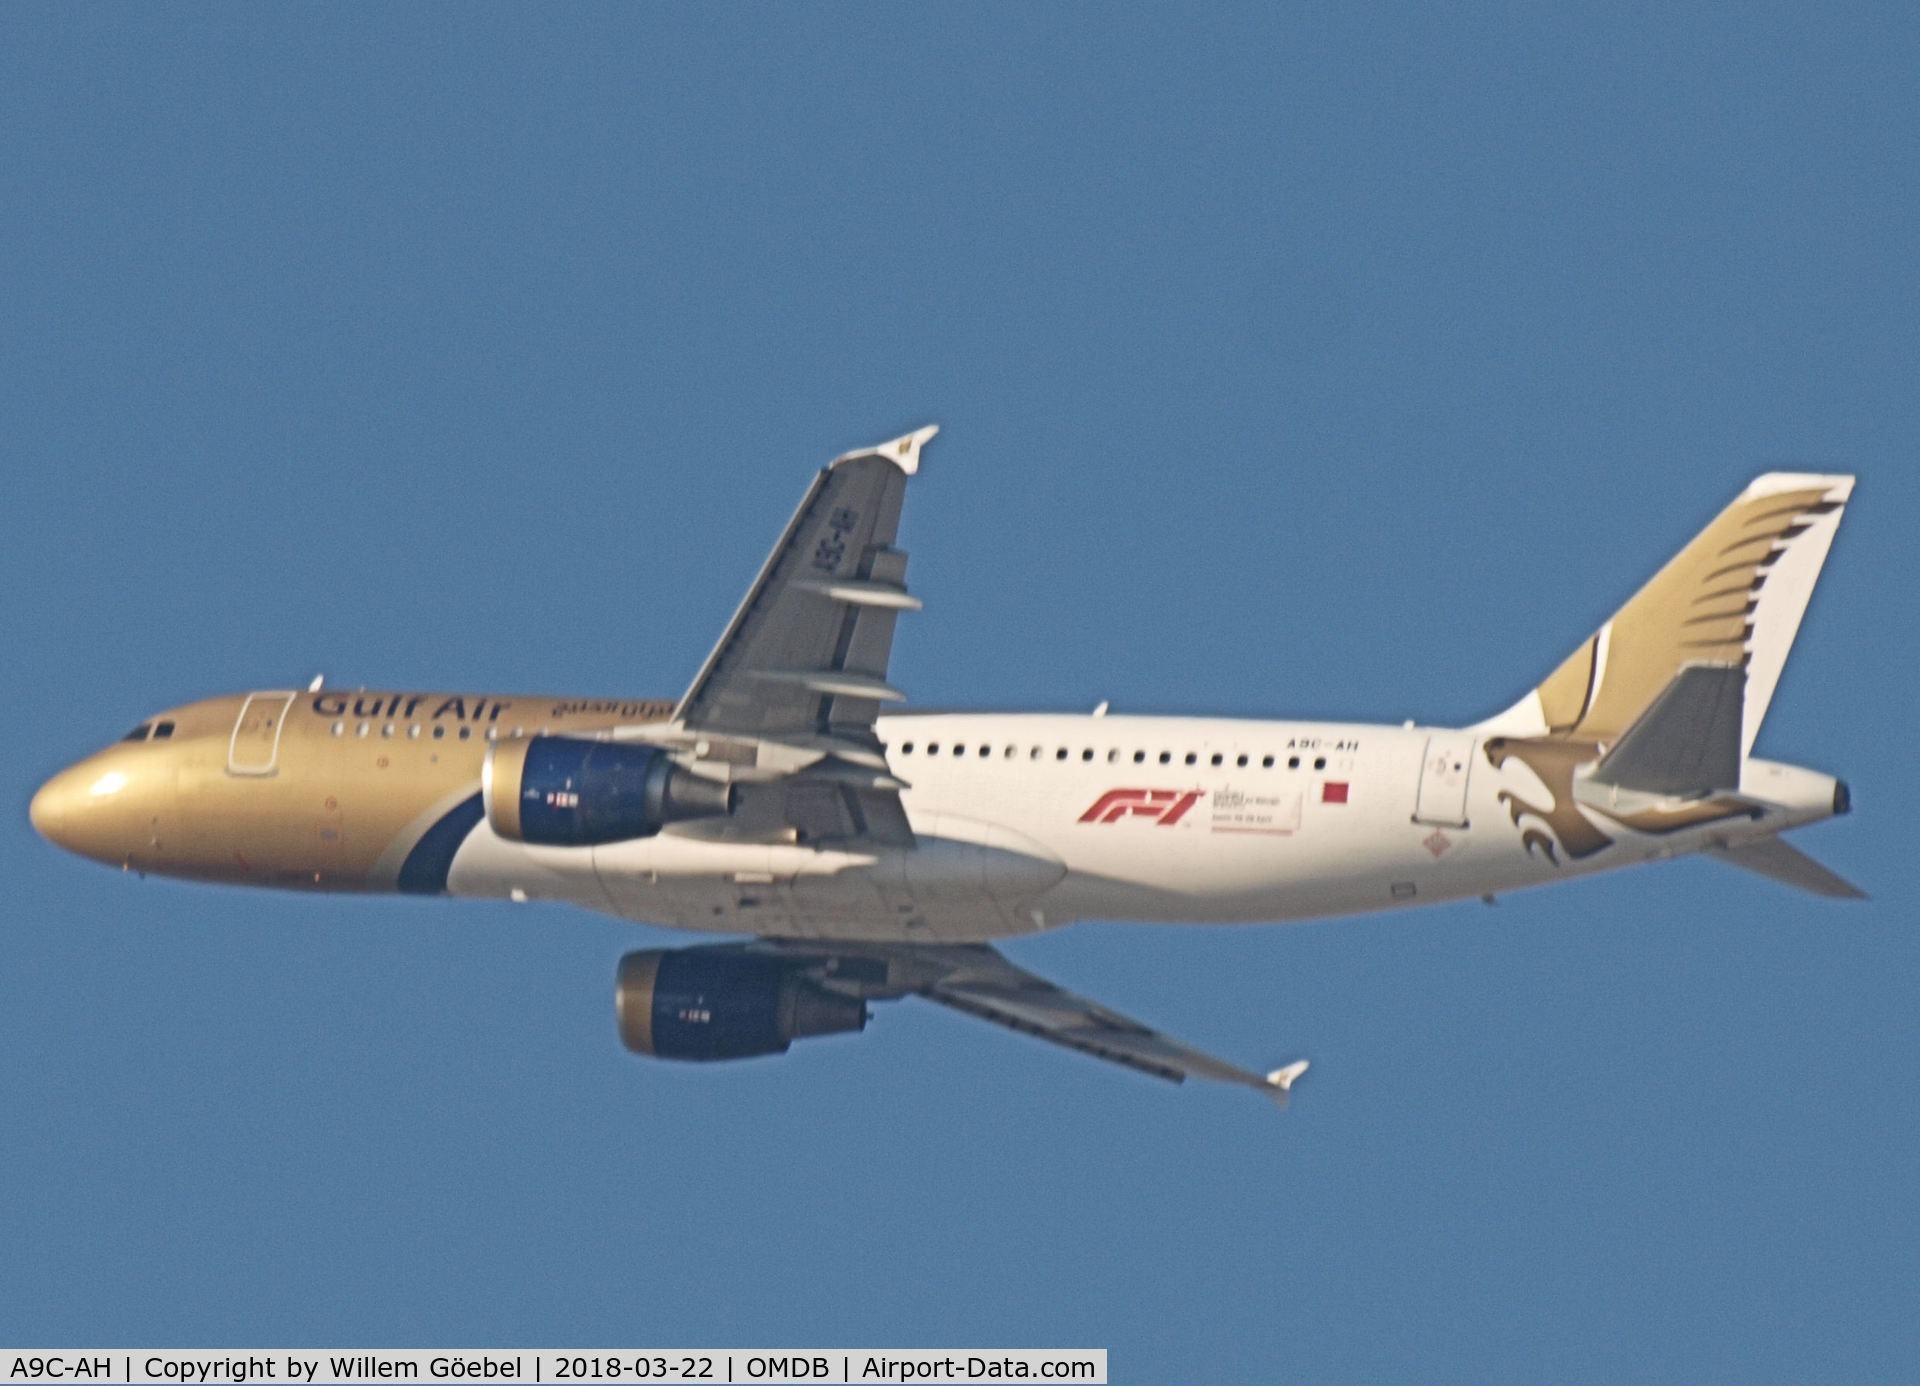 A9C-AH, 2010 Airbus A320-214 C/N 4218, Take off from DUBAI INTERNATIONAL Airport